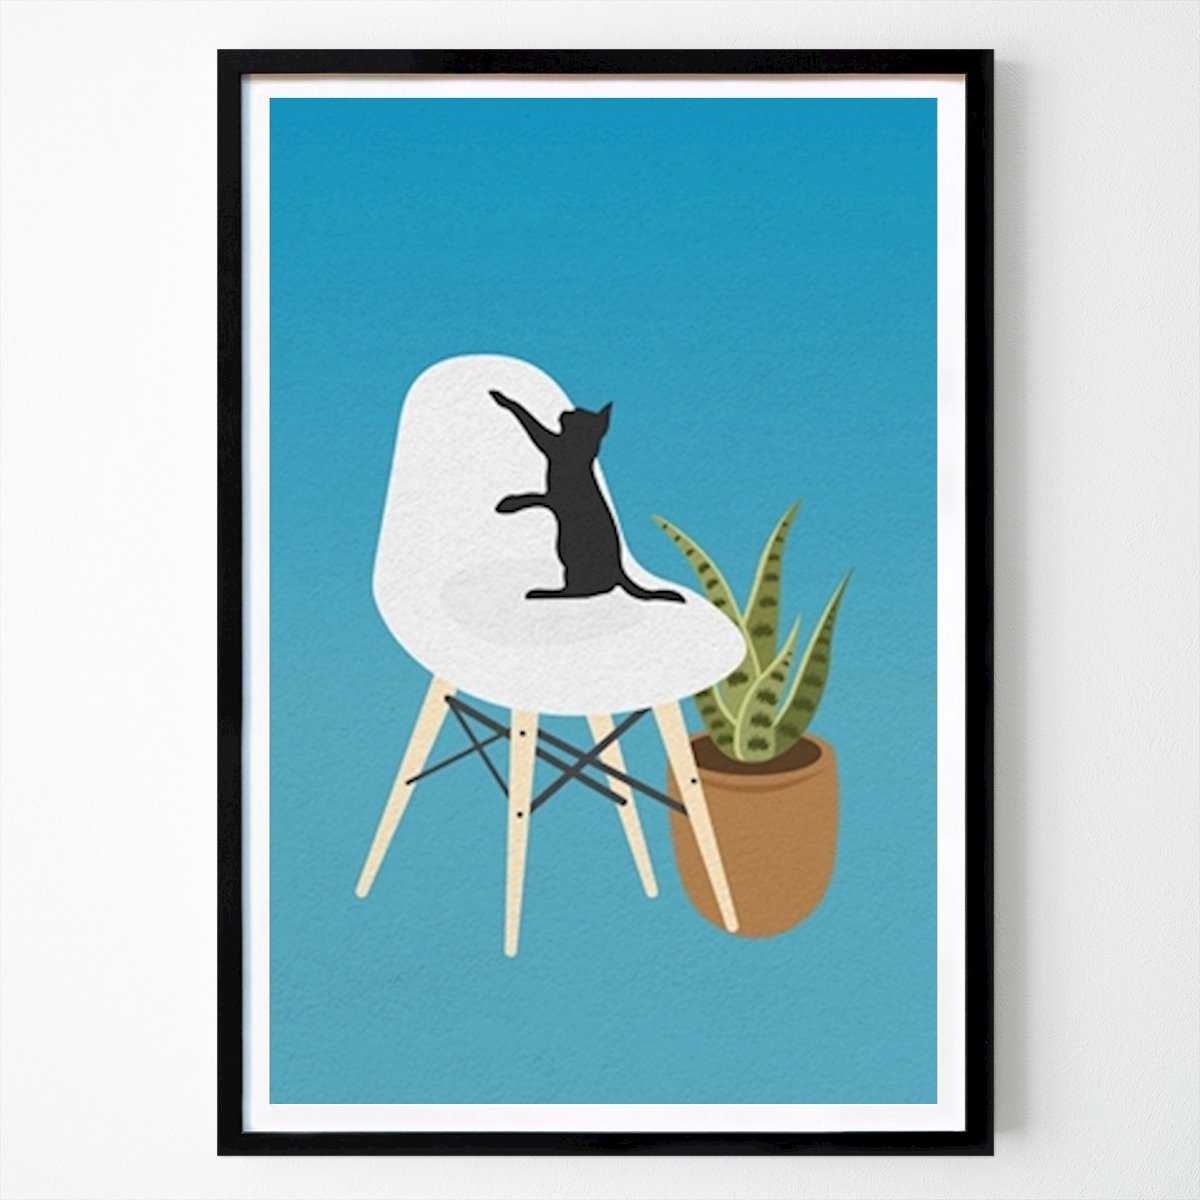 Poster: Katze auf einem Stuhl in einem blauen Raum von Ricky Aditya Perdana von Printler